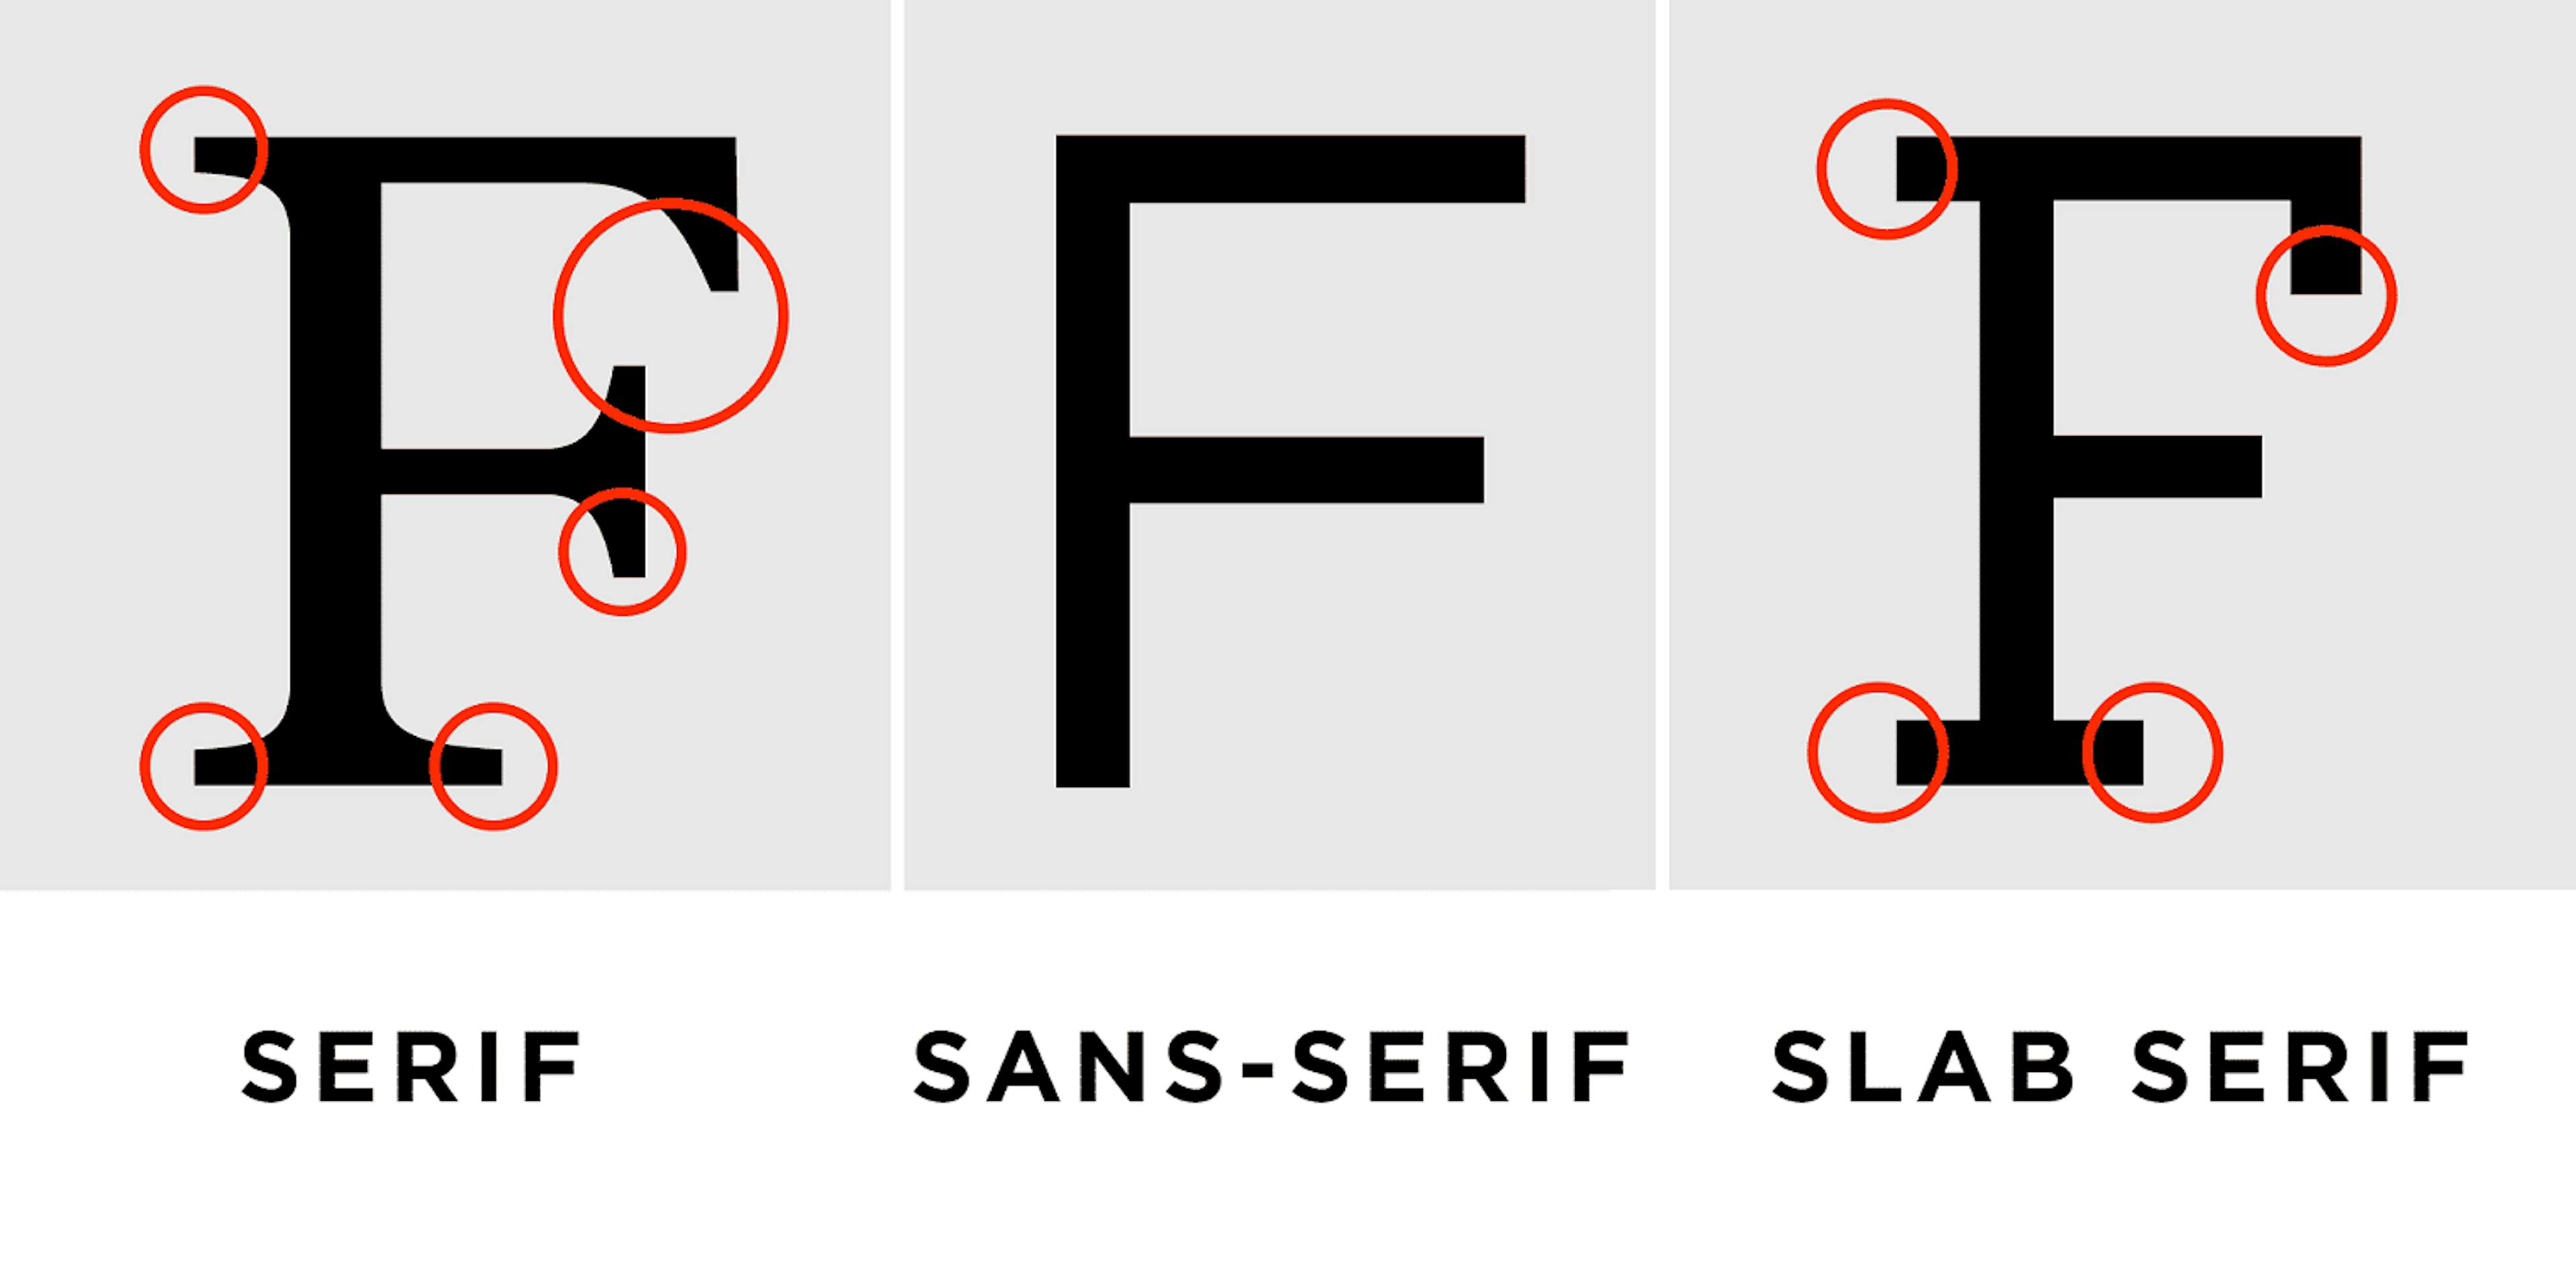 セリフ、サンセリフ、スラブ セリフ フォント (出典: https://atelierlks.com/how-to-choose-the-perfect-font-for-your-brand/)